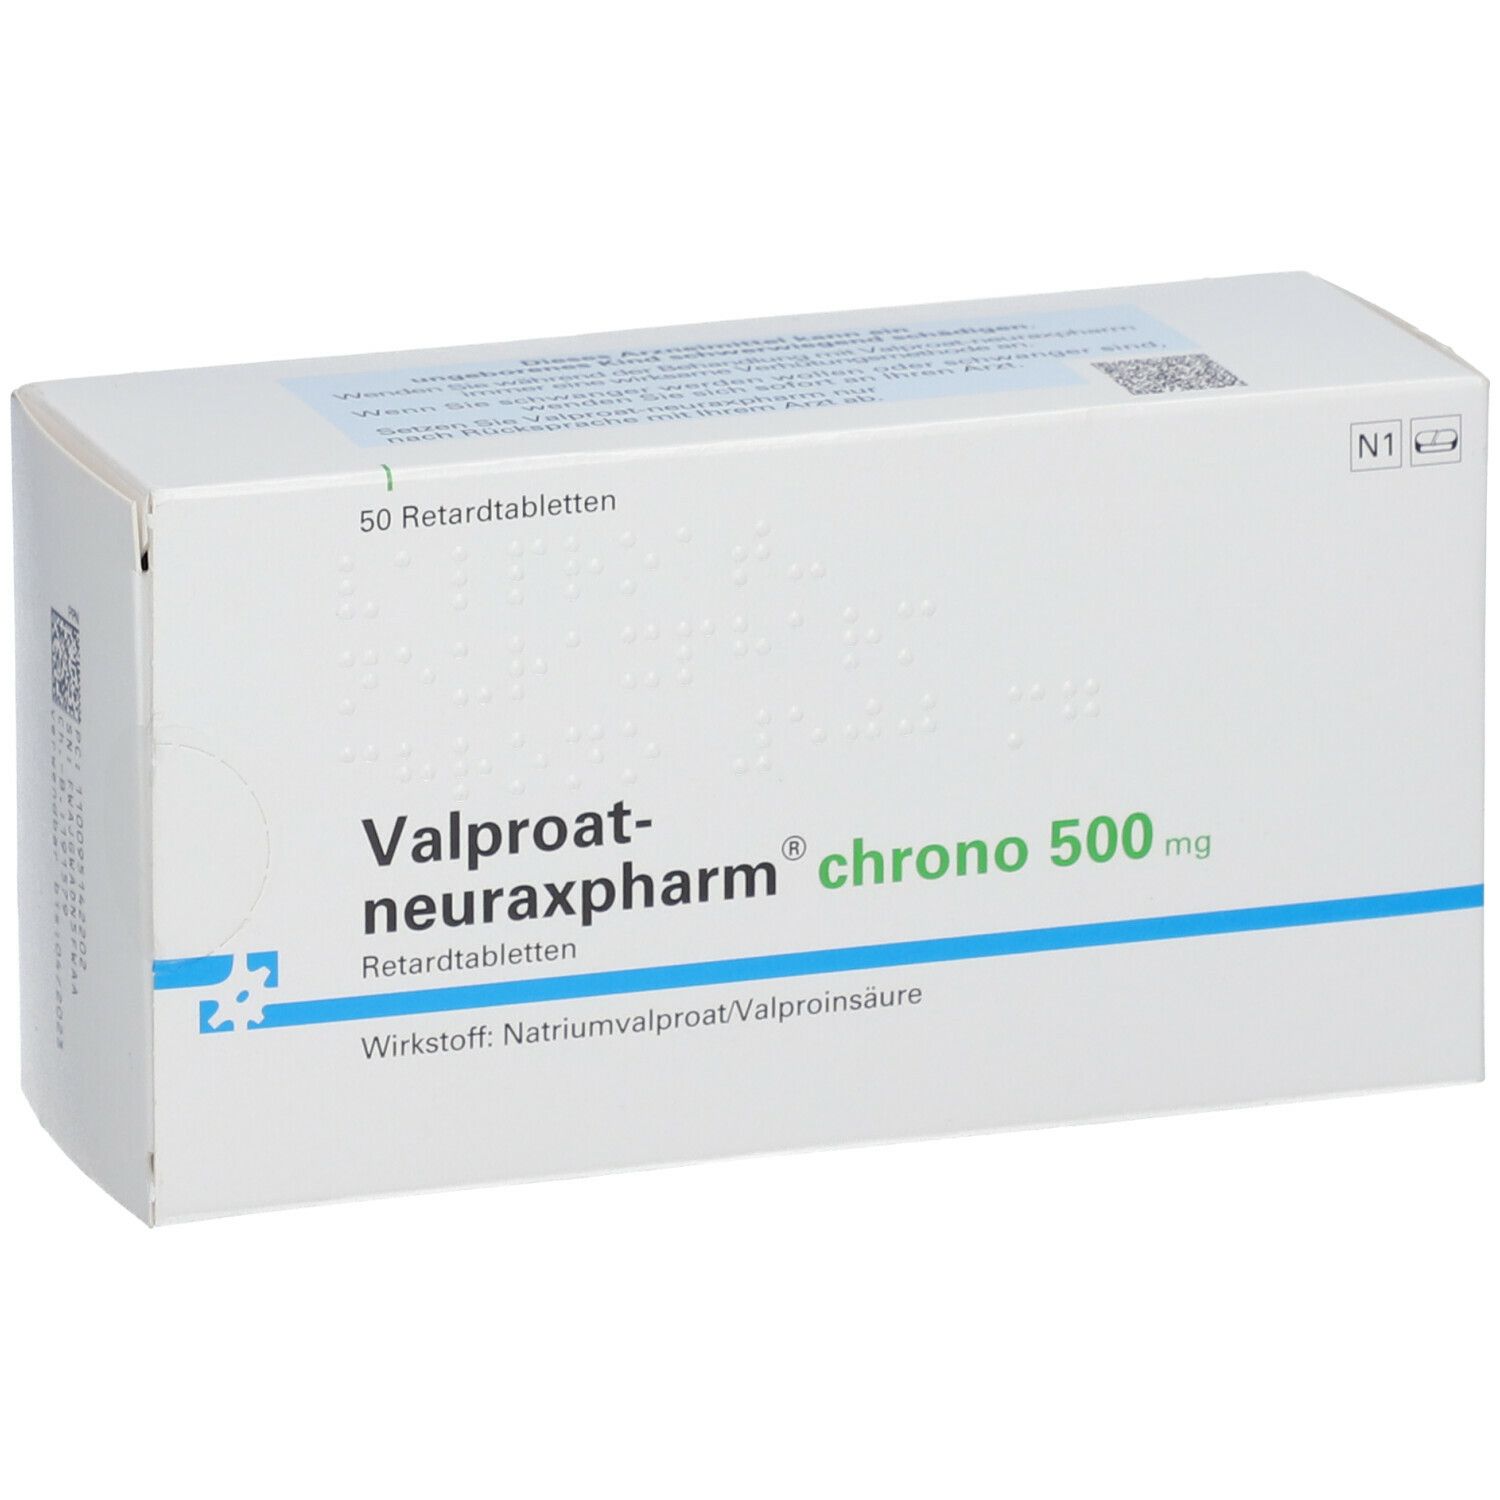 Valproat-neuraxpharm® Chrono 500 mg